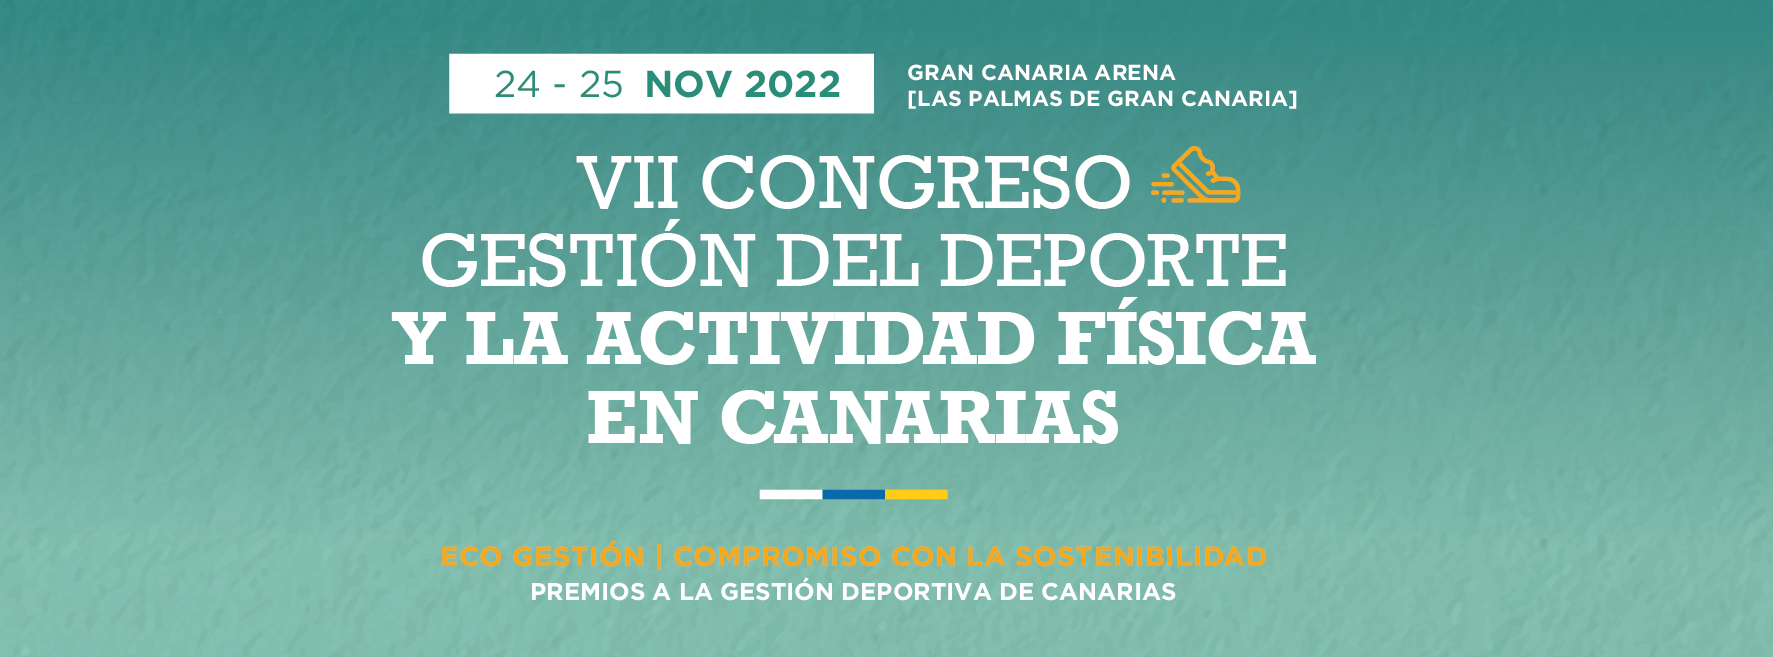 INFO sobre el VII CONGRESO que se celebra el 24 y 25 de noviembre de 2022 en Las Palmas de Gc.